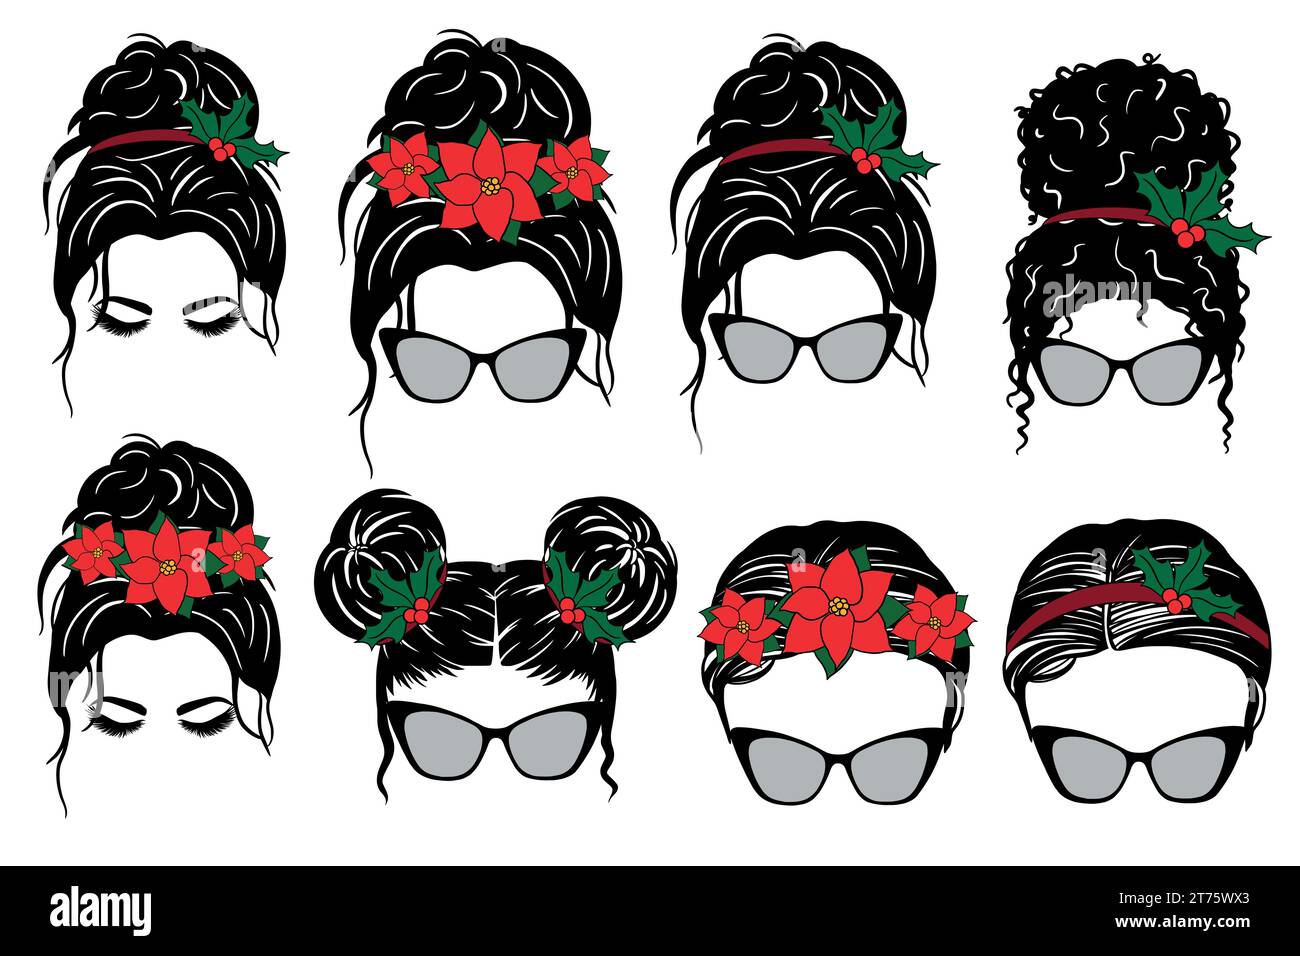 Belle coiffure de femme avec Poinsettia, lunettes de soleil et bandanas dans divers thèmes. Collection de vecteurs V34 Illustration de Vecteur